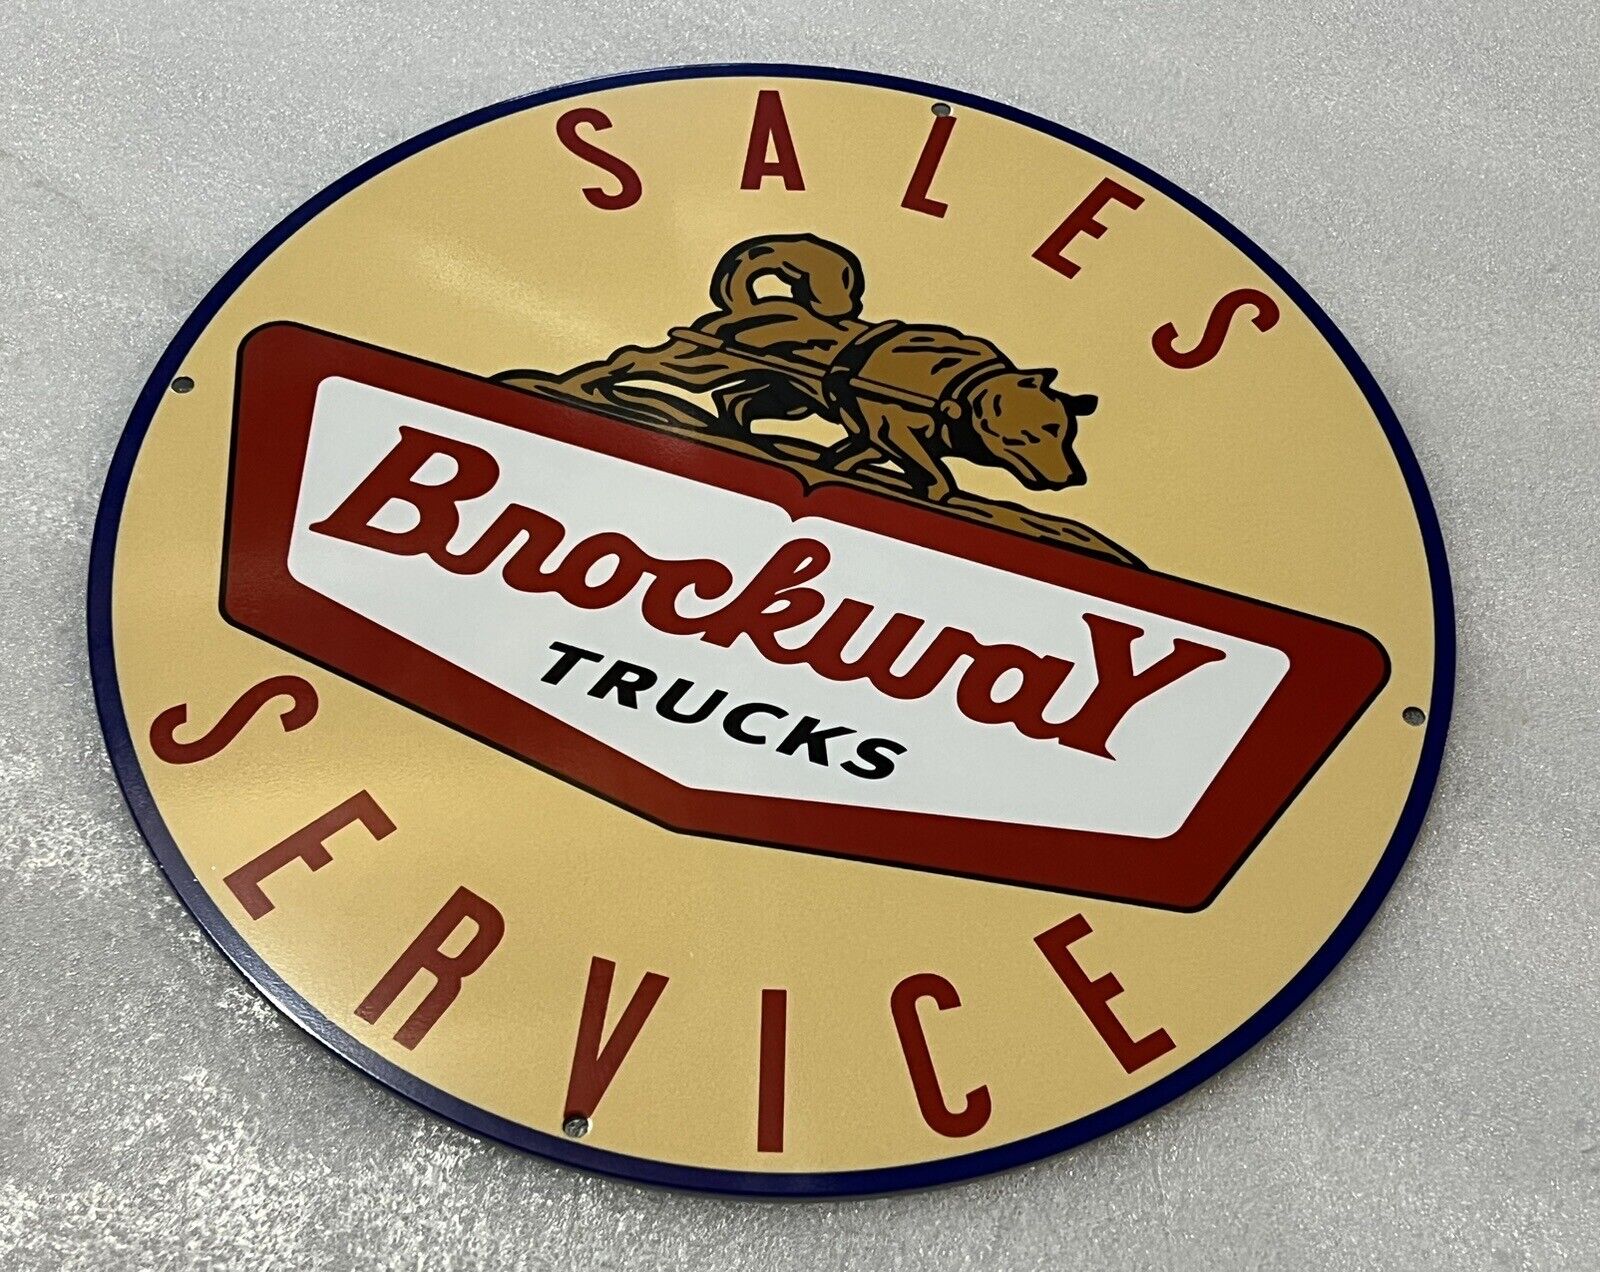 Brockway Trucks Sales Service  Vintage Style Heavy Steel Sign